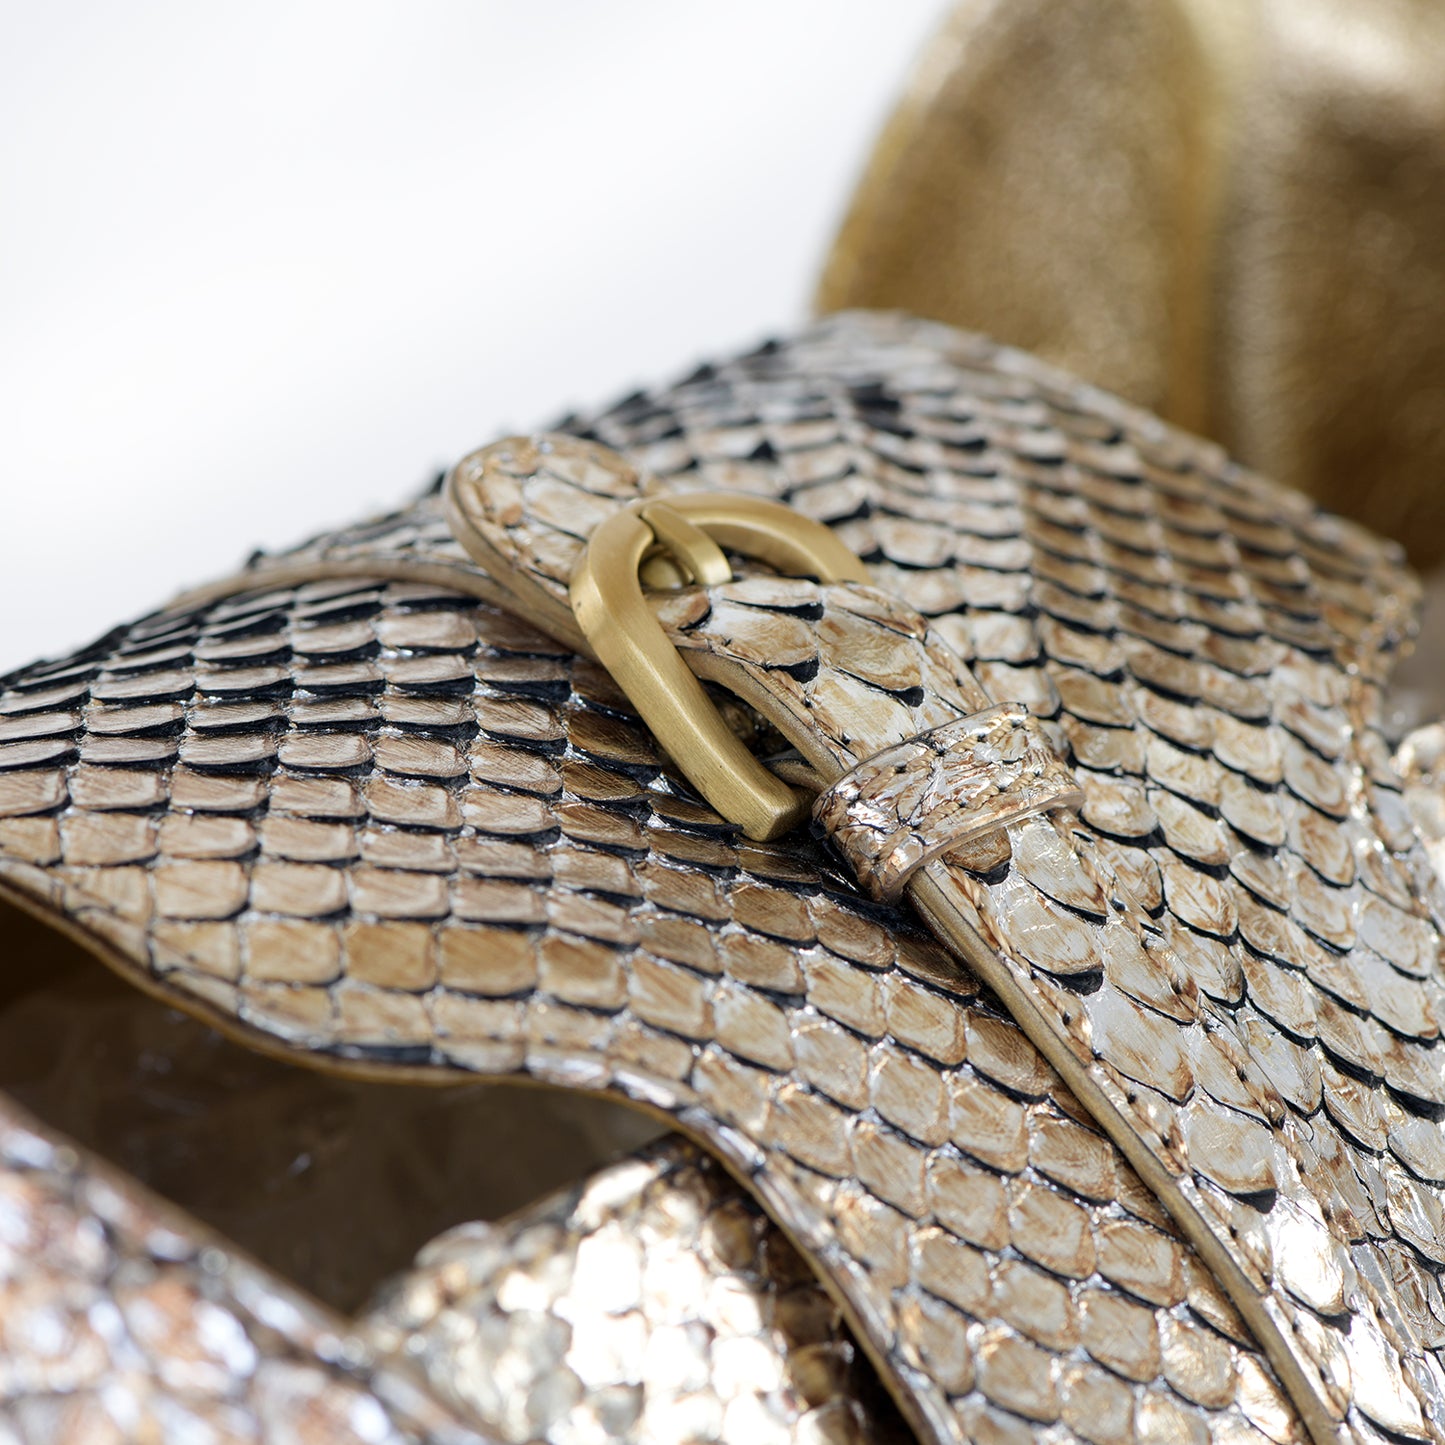 Tulita Metallic Snakeskin Bag